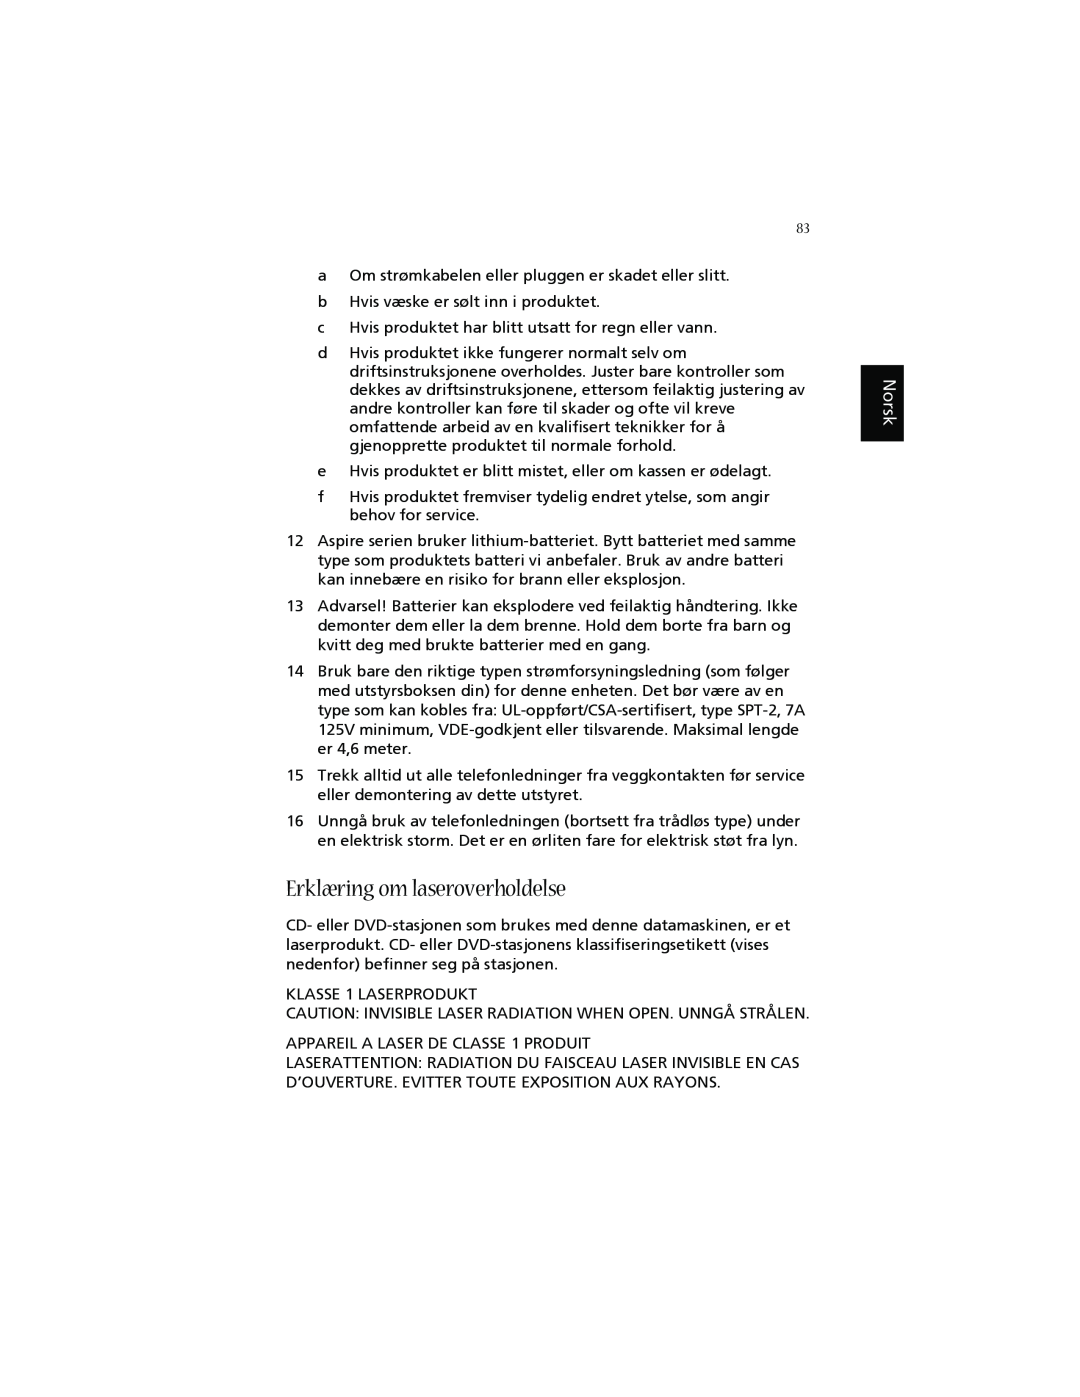 Acer 1660 manual Erklæring om laseroverholdelse, Norsk 